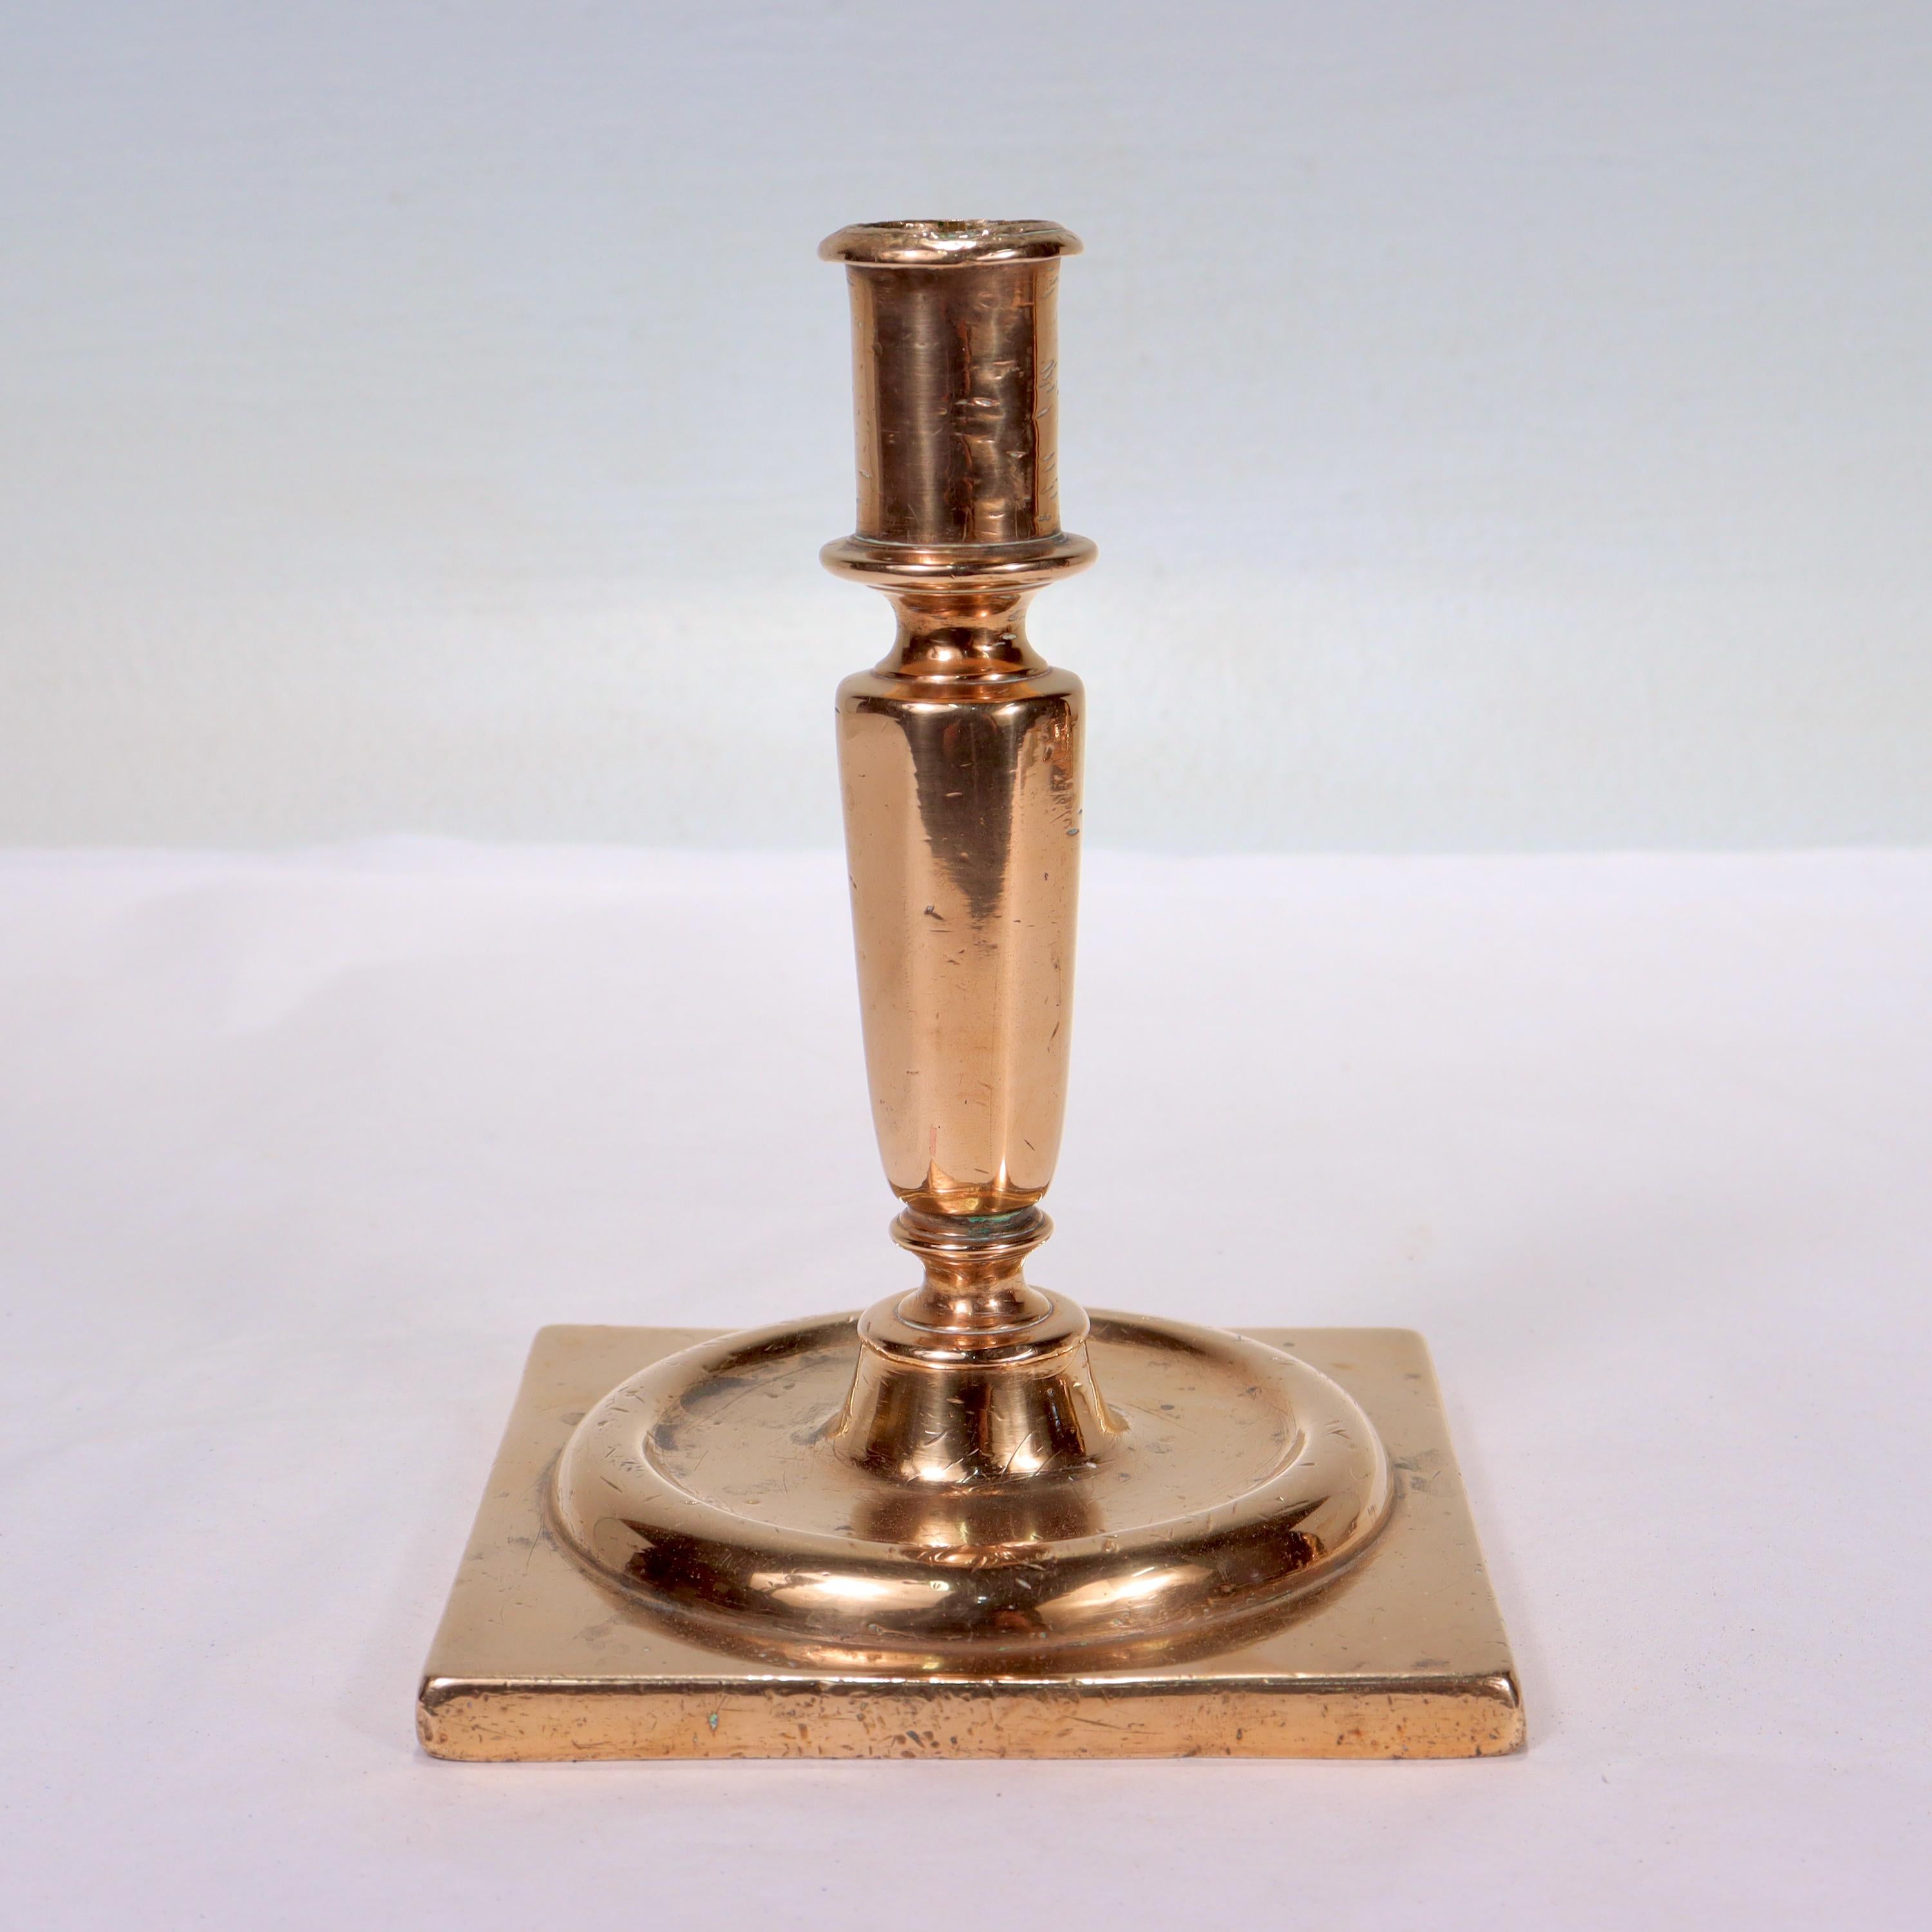 Ein feiner antiker Kerzenhalter aus Bronze. 

Aus dem Ende des 17. Jahrhunderts.

Wahrscheinlich Niederländisch oder Englisch.

Mit einem leicht orangefarbenen Farbton und einer breiten quadratischen Basis, die einen sich verjüngenden,